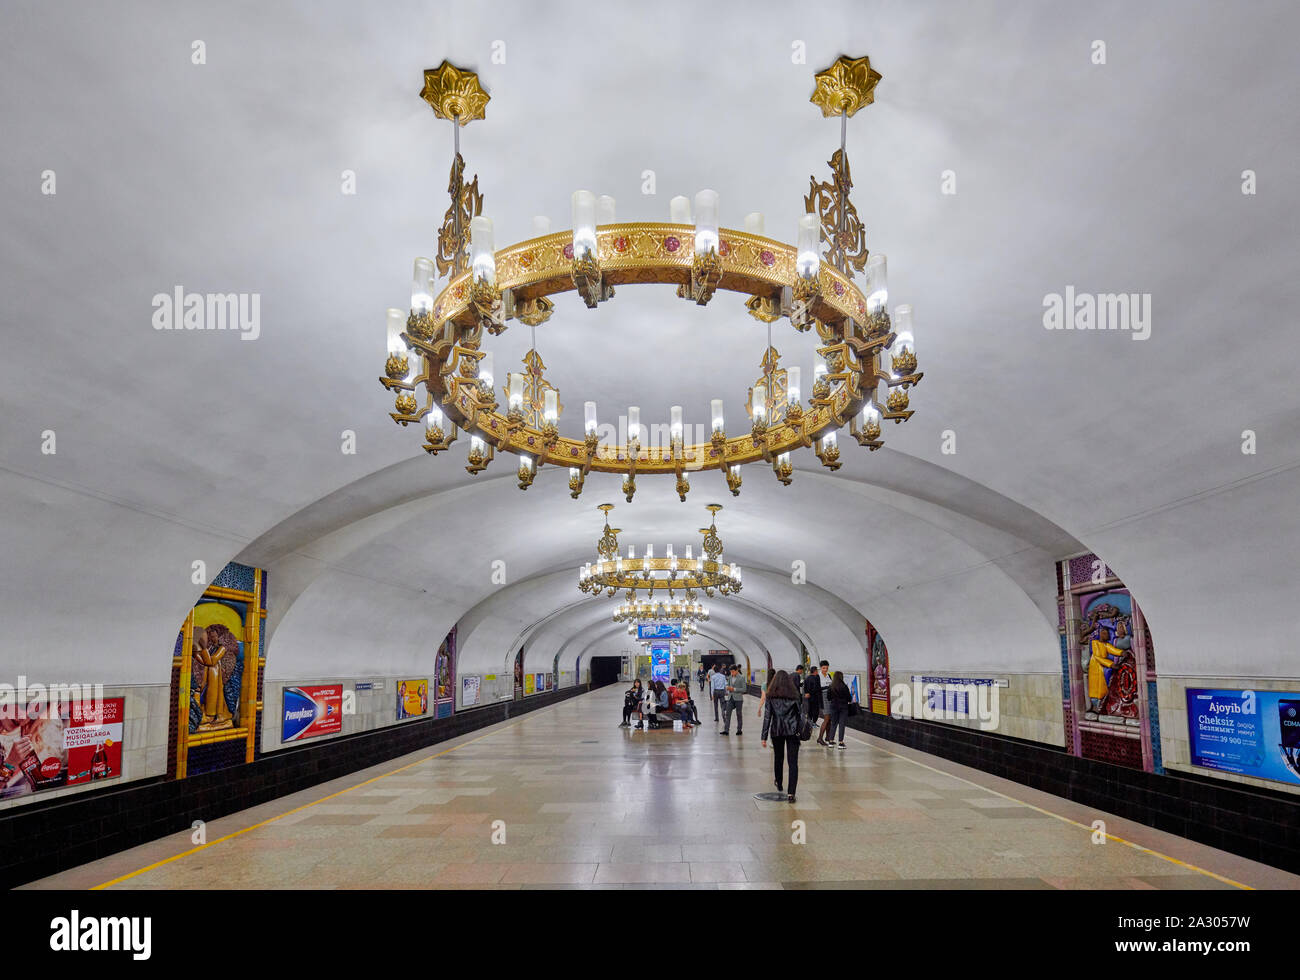 Chilonzor della stazione della metropolitana di Tashkent, Tashkent, Uzbekistan in Asia centrale Foto Stock